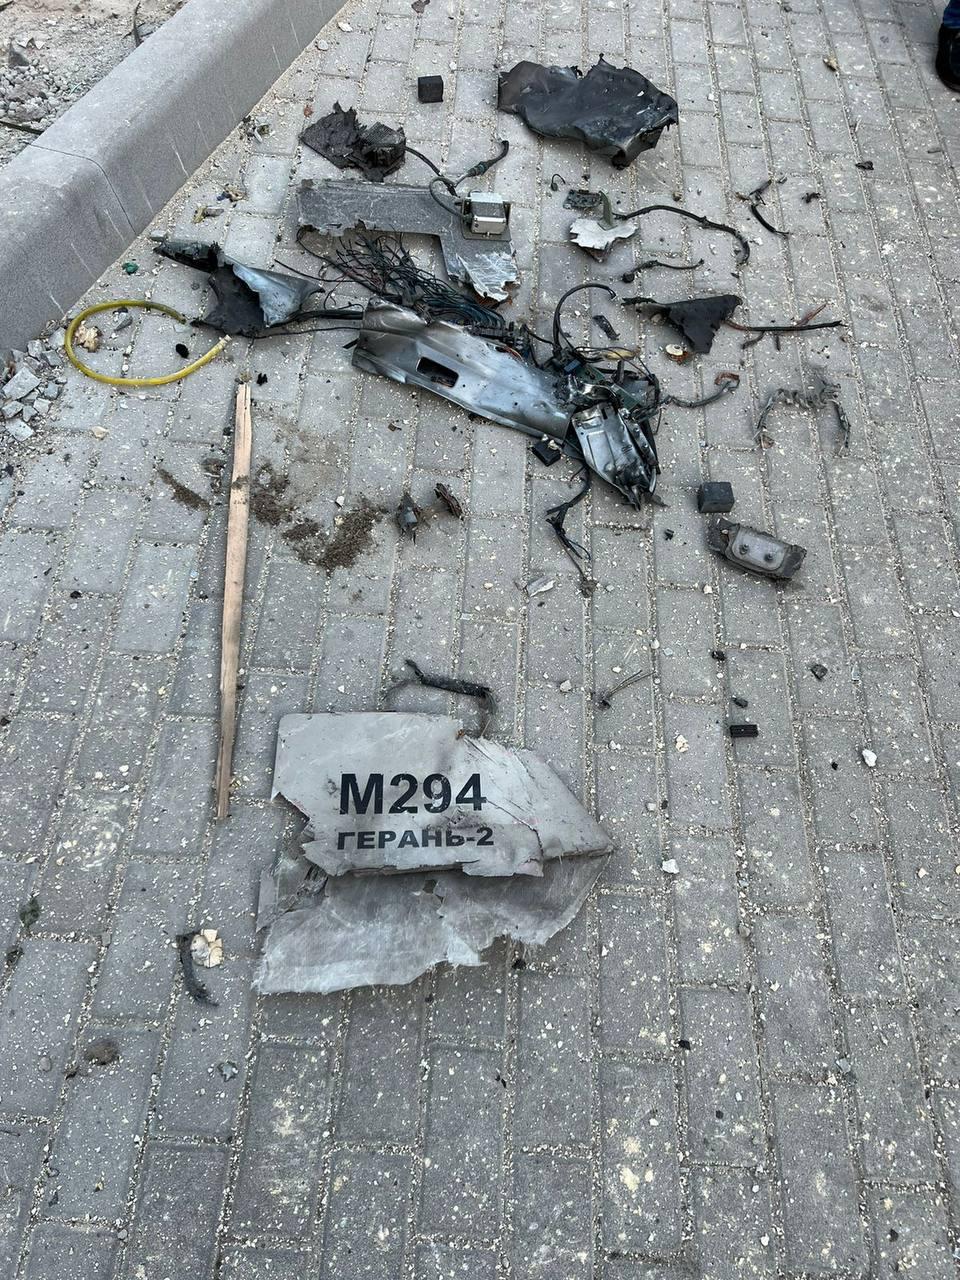 Обломки дрона в Киеве / фото Виталий Кличко, Telegram